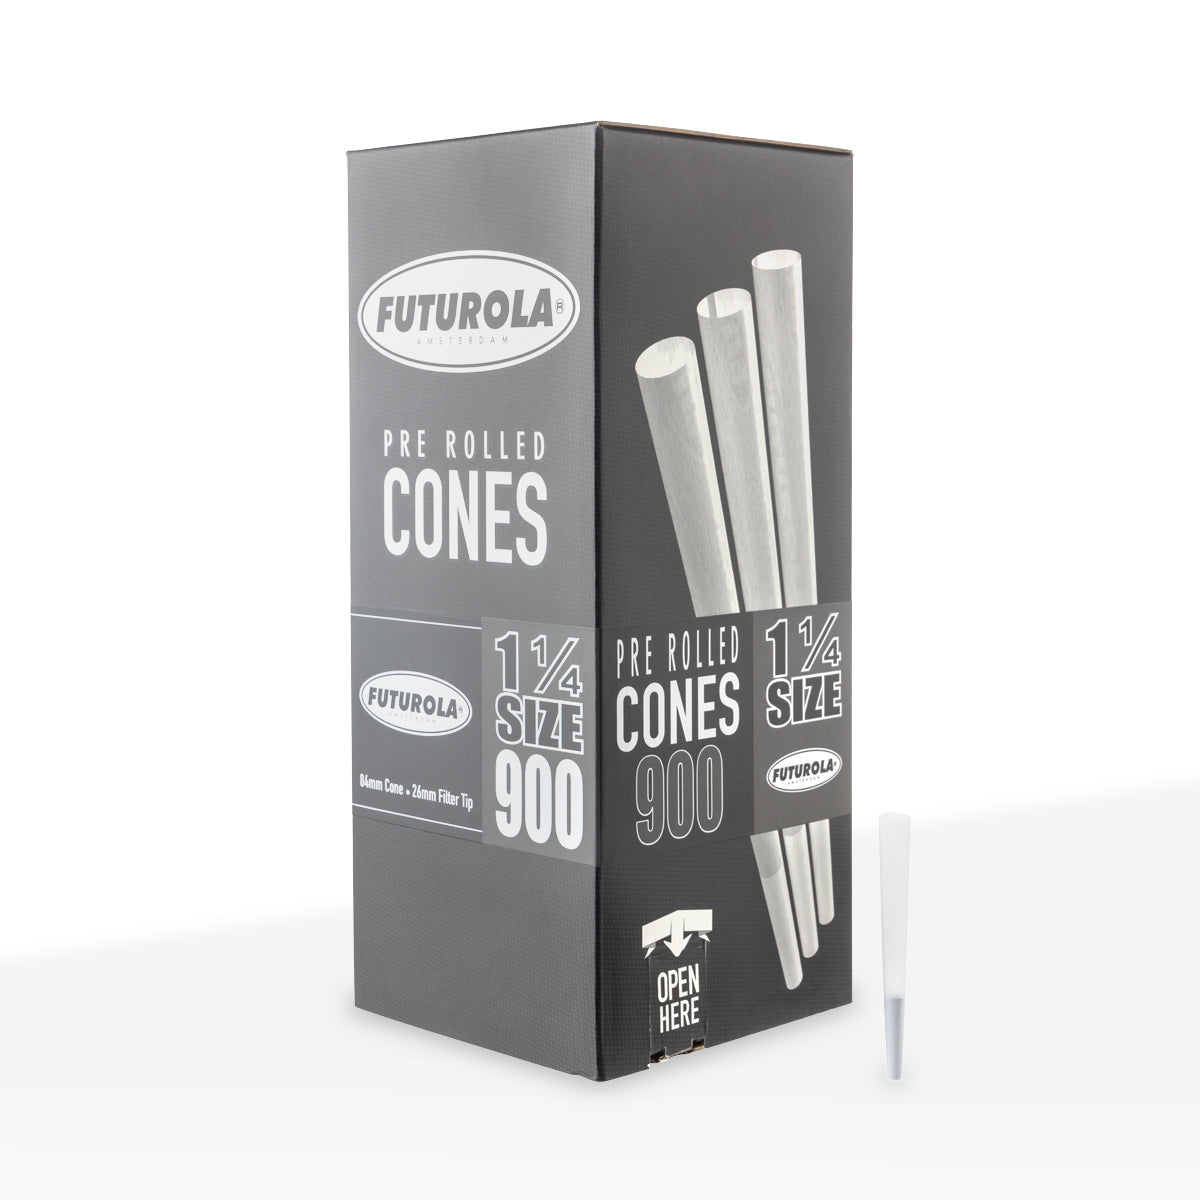 FUTUROLA® | Pre-Rolled Cones 1¼ Size | 84mm - White Paper - 900 Count